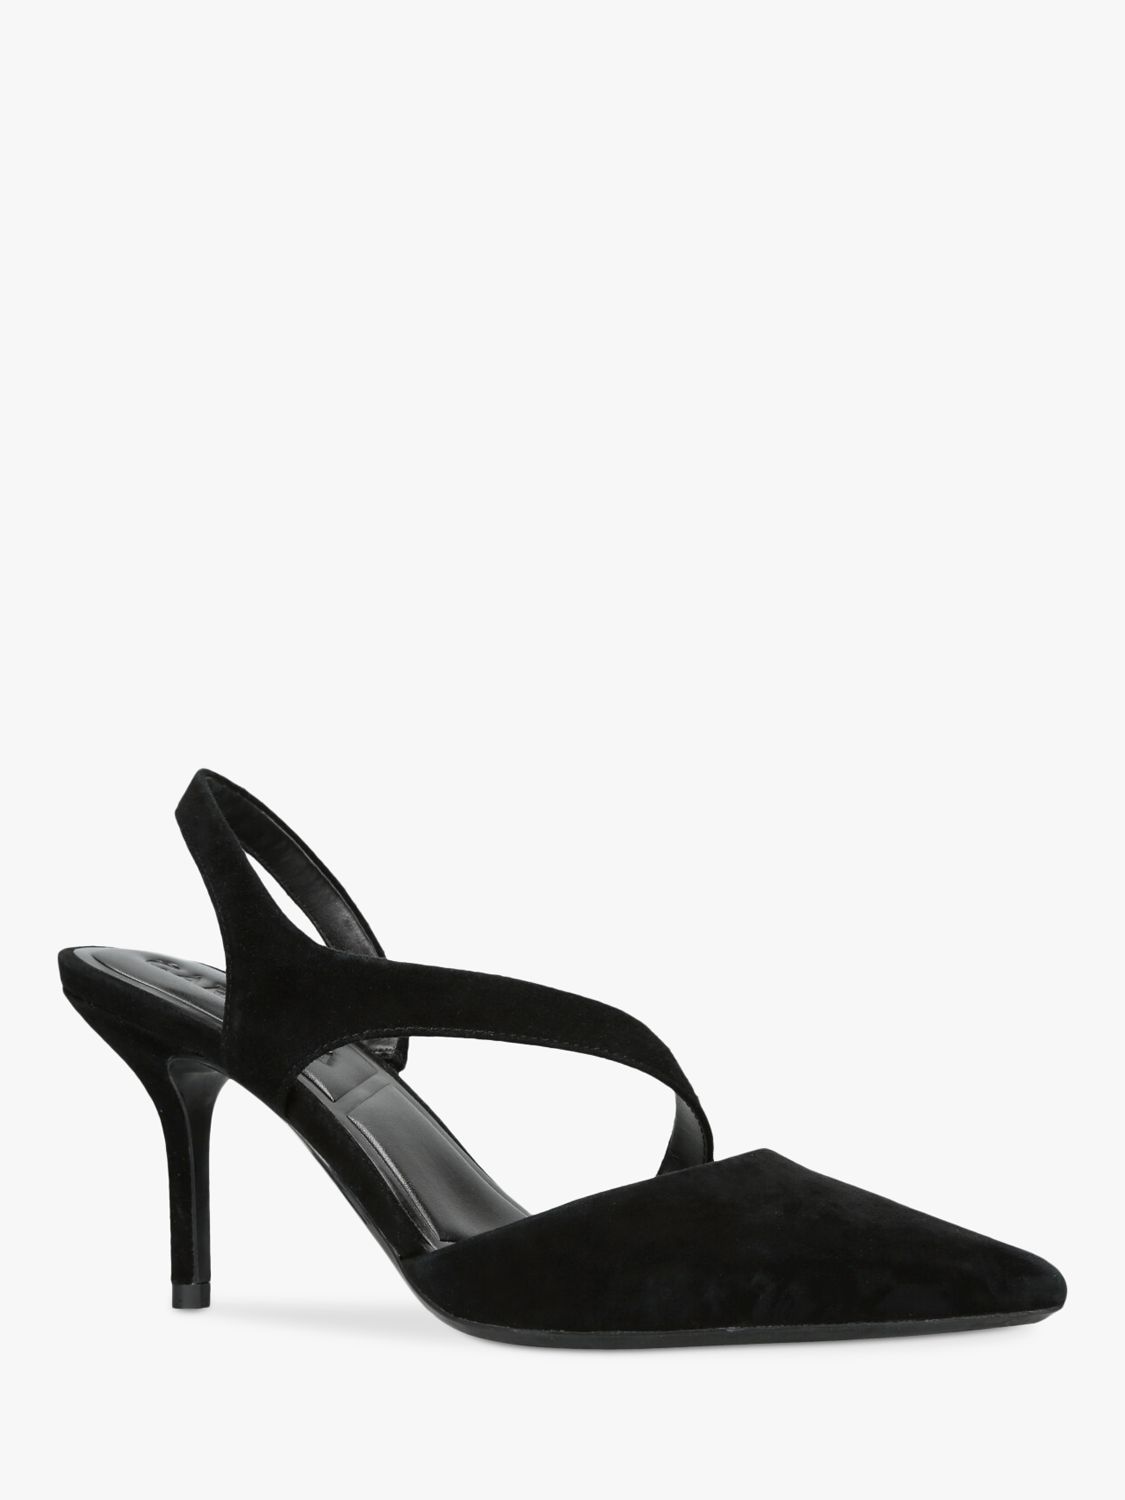 Carvela Symmetry Suede Court Shoes, Black, 3